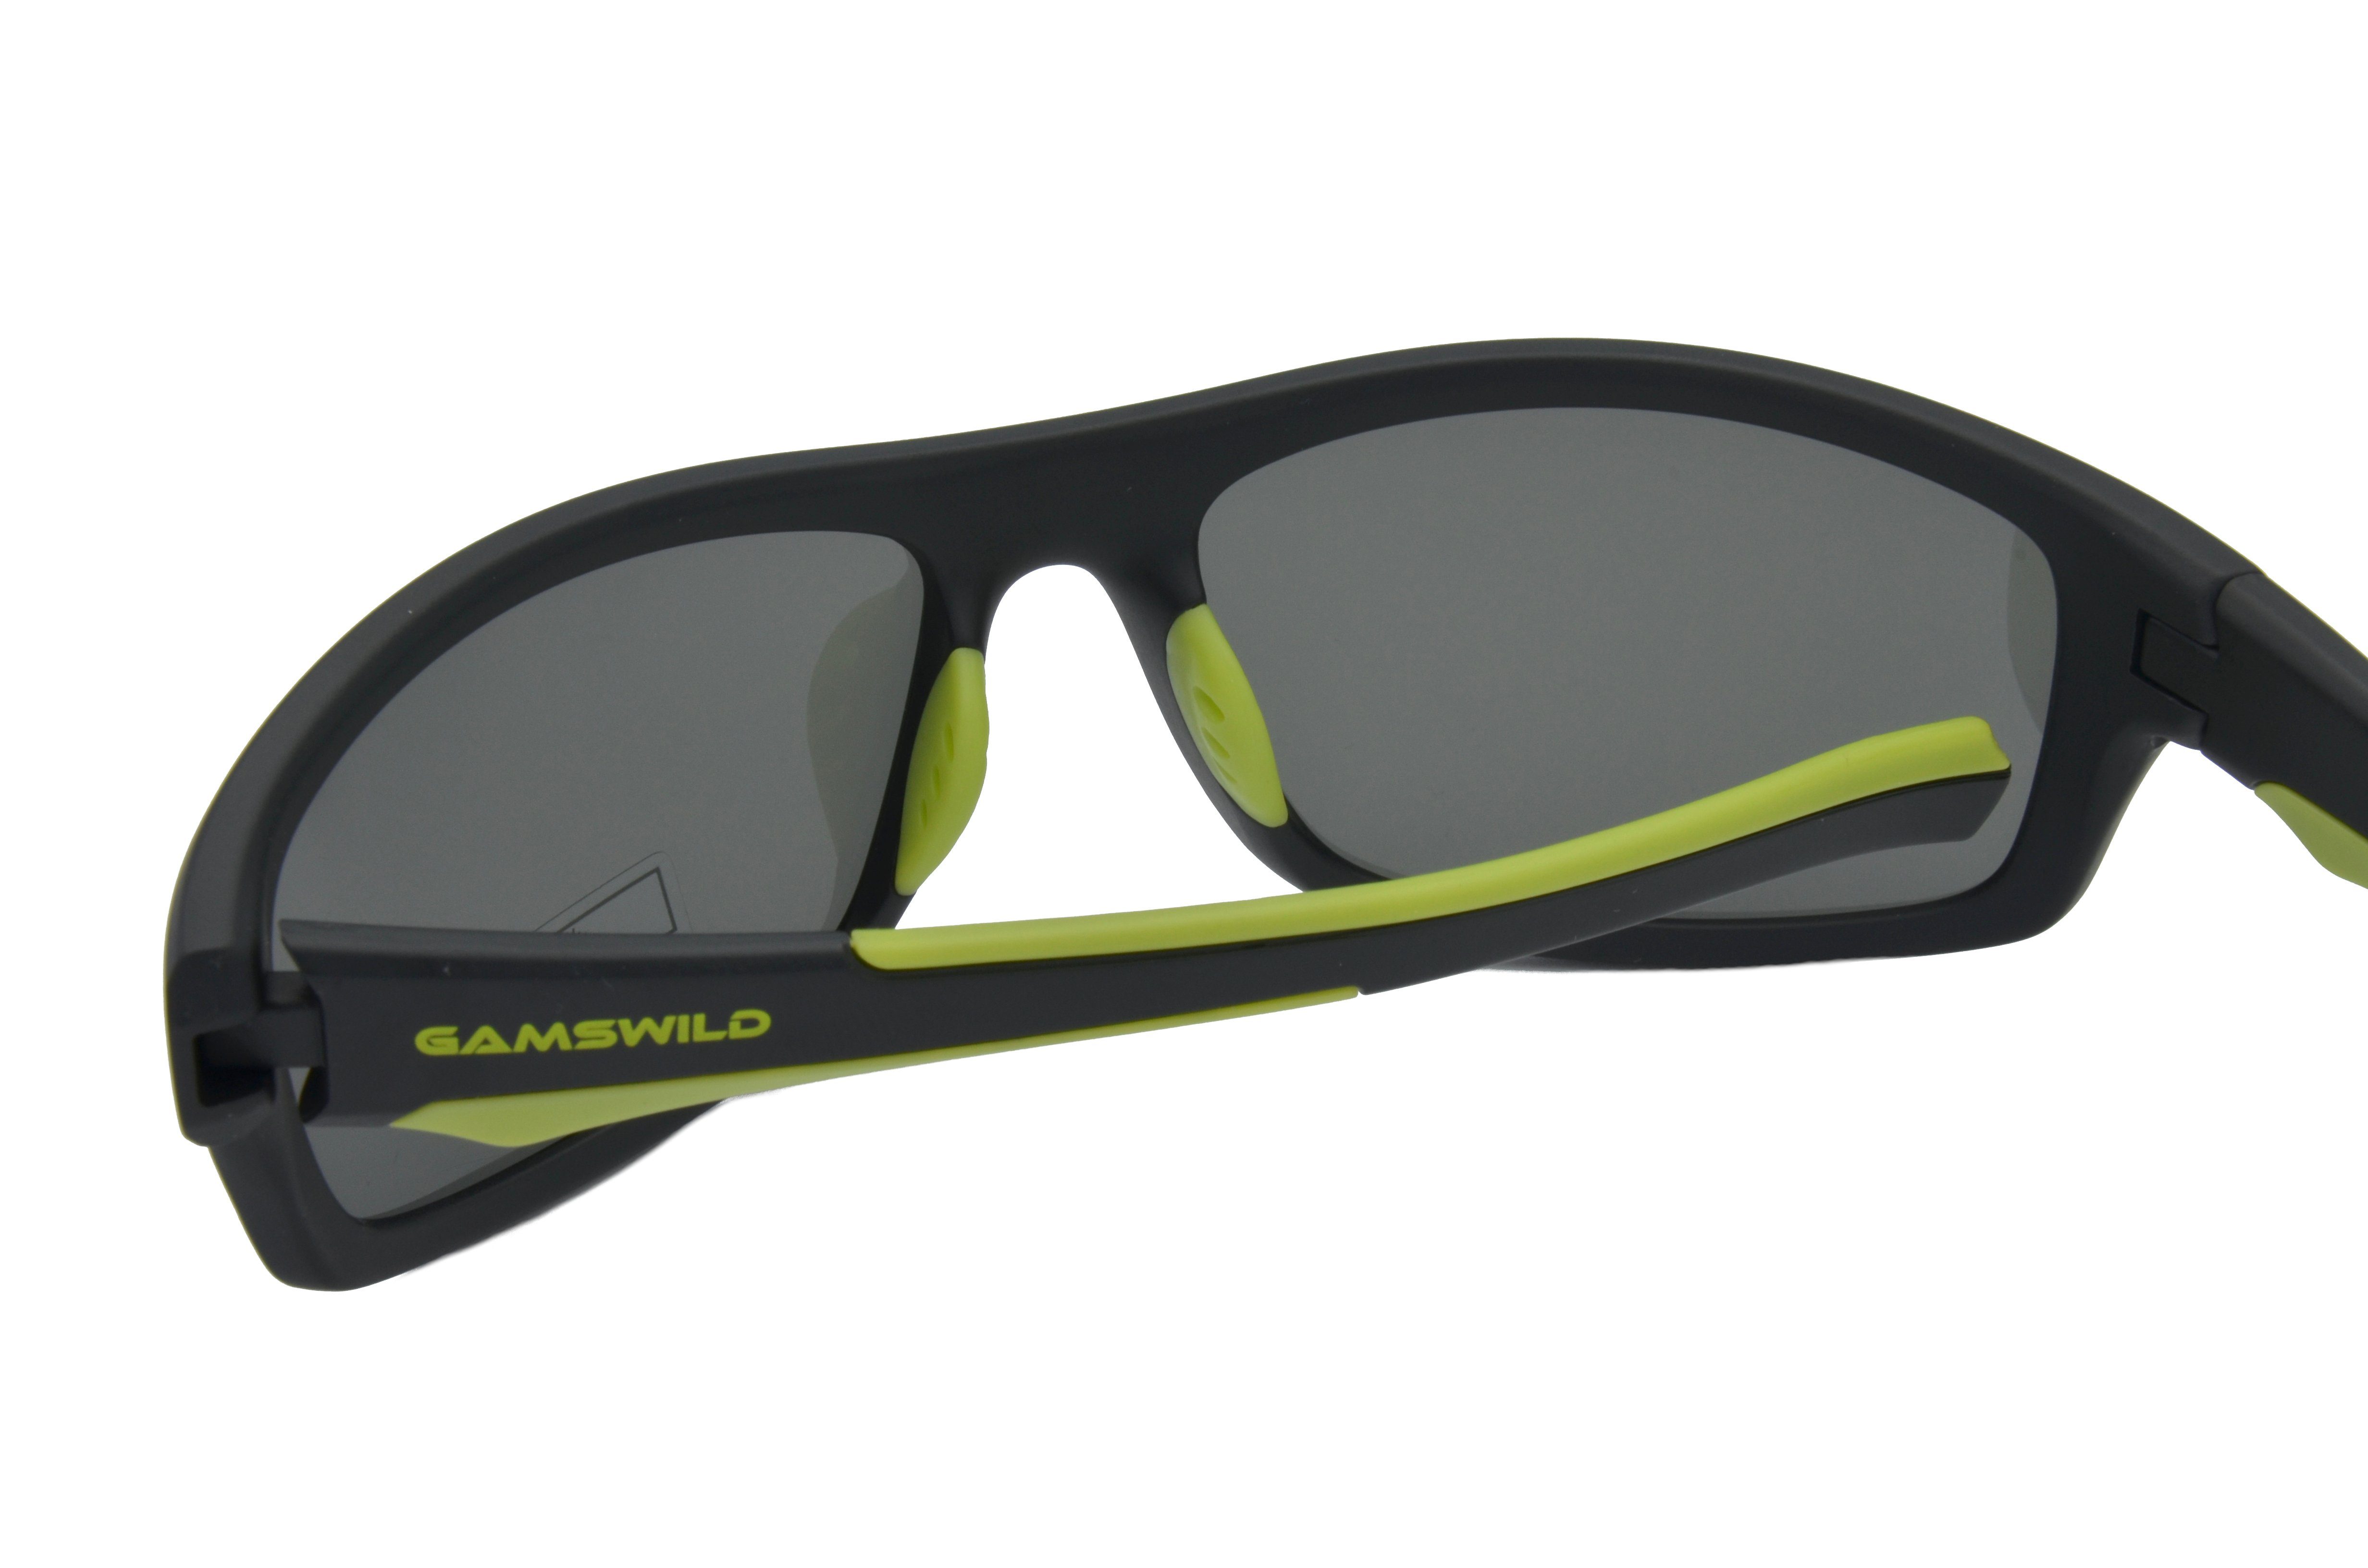 Gamswild Sportbrille WS2238 -grün TR90 Fahrradbrille grau, Herren Sonnenbrille Unisex, schwarz-grün blau, / Skibrille -orange, polarisiert, schwarz-rot, Damen